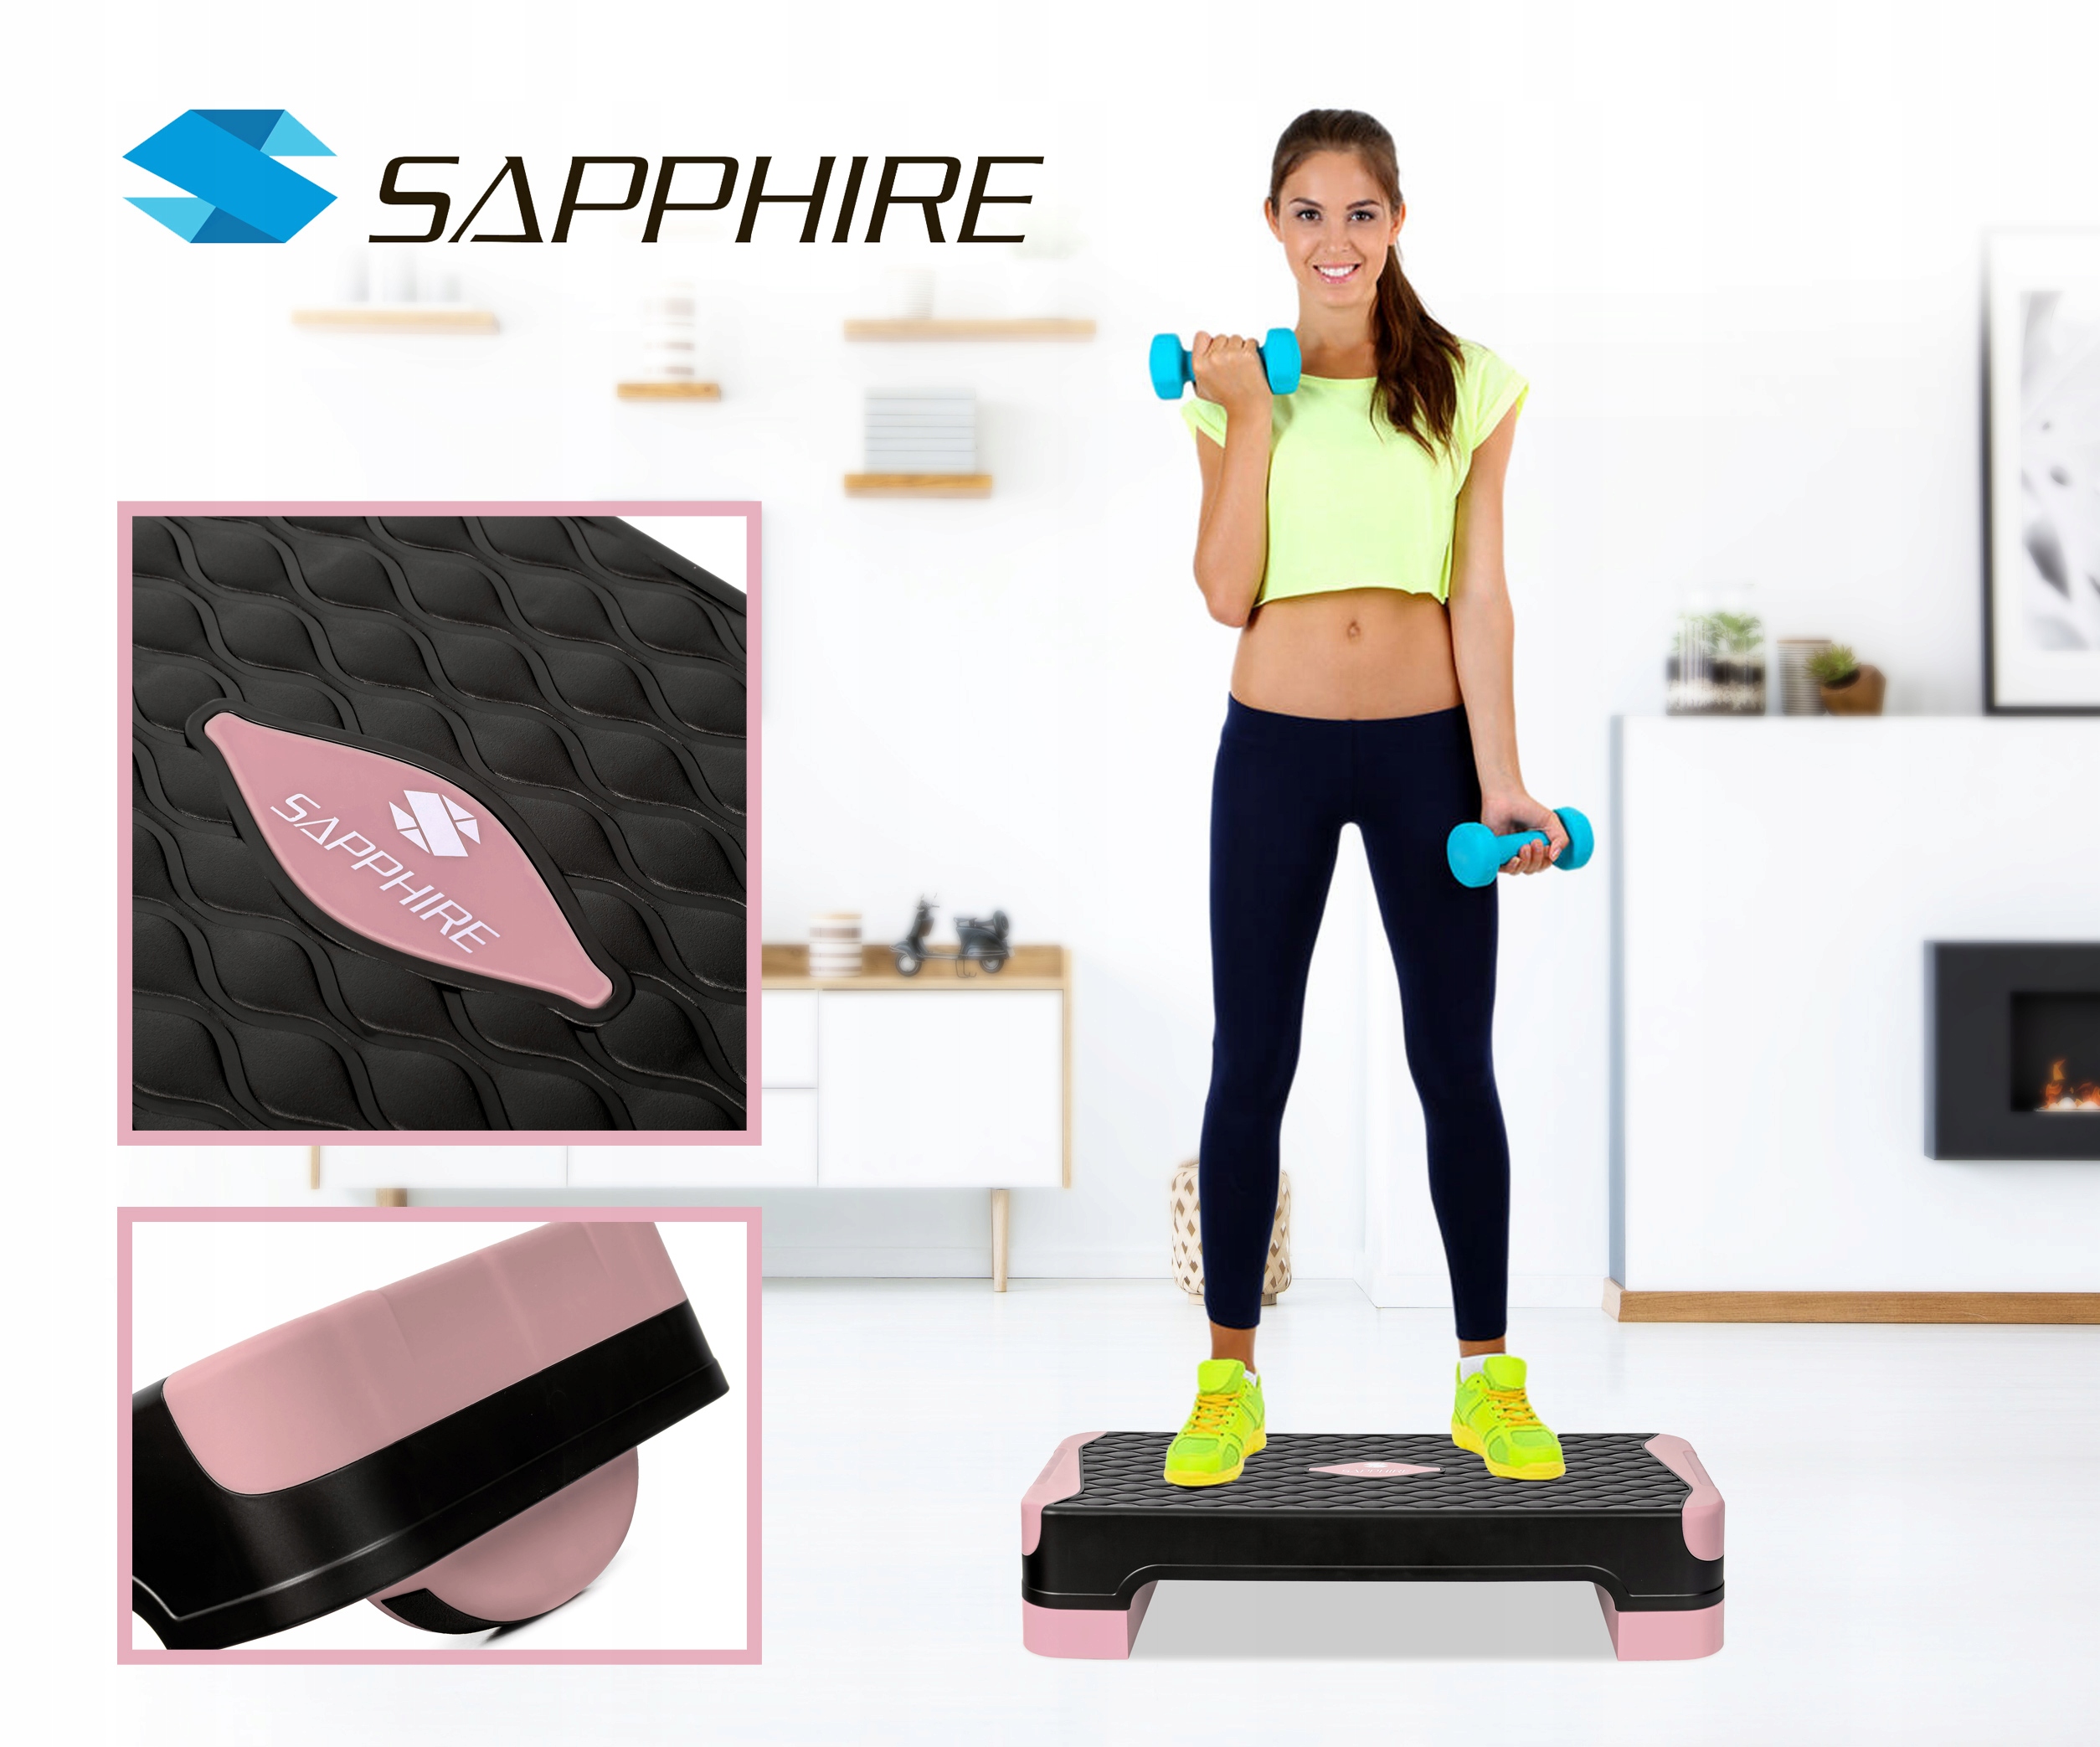 Step fitness Sapphire SG-045 z kategorii Stepy, marka Sapphire 